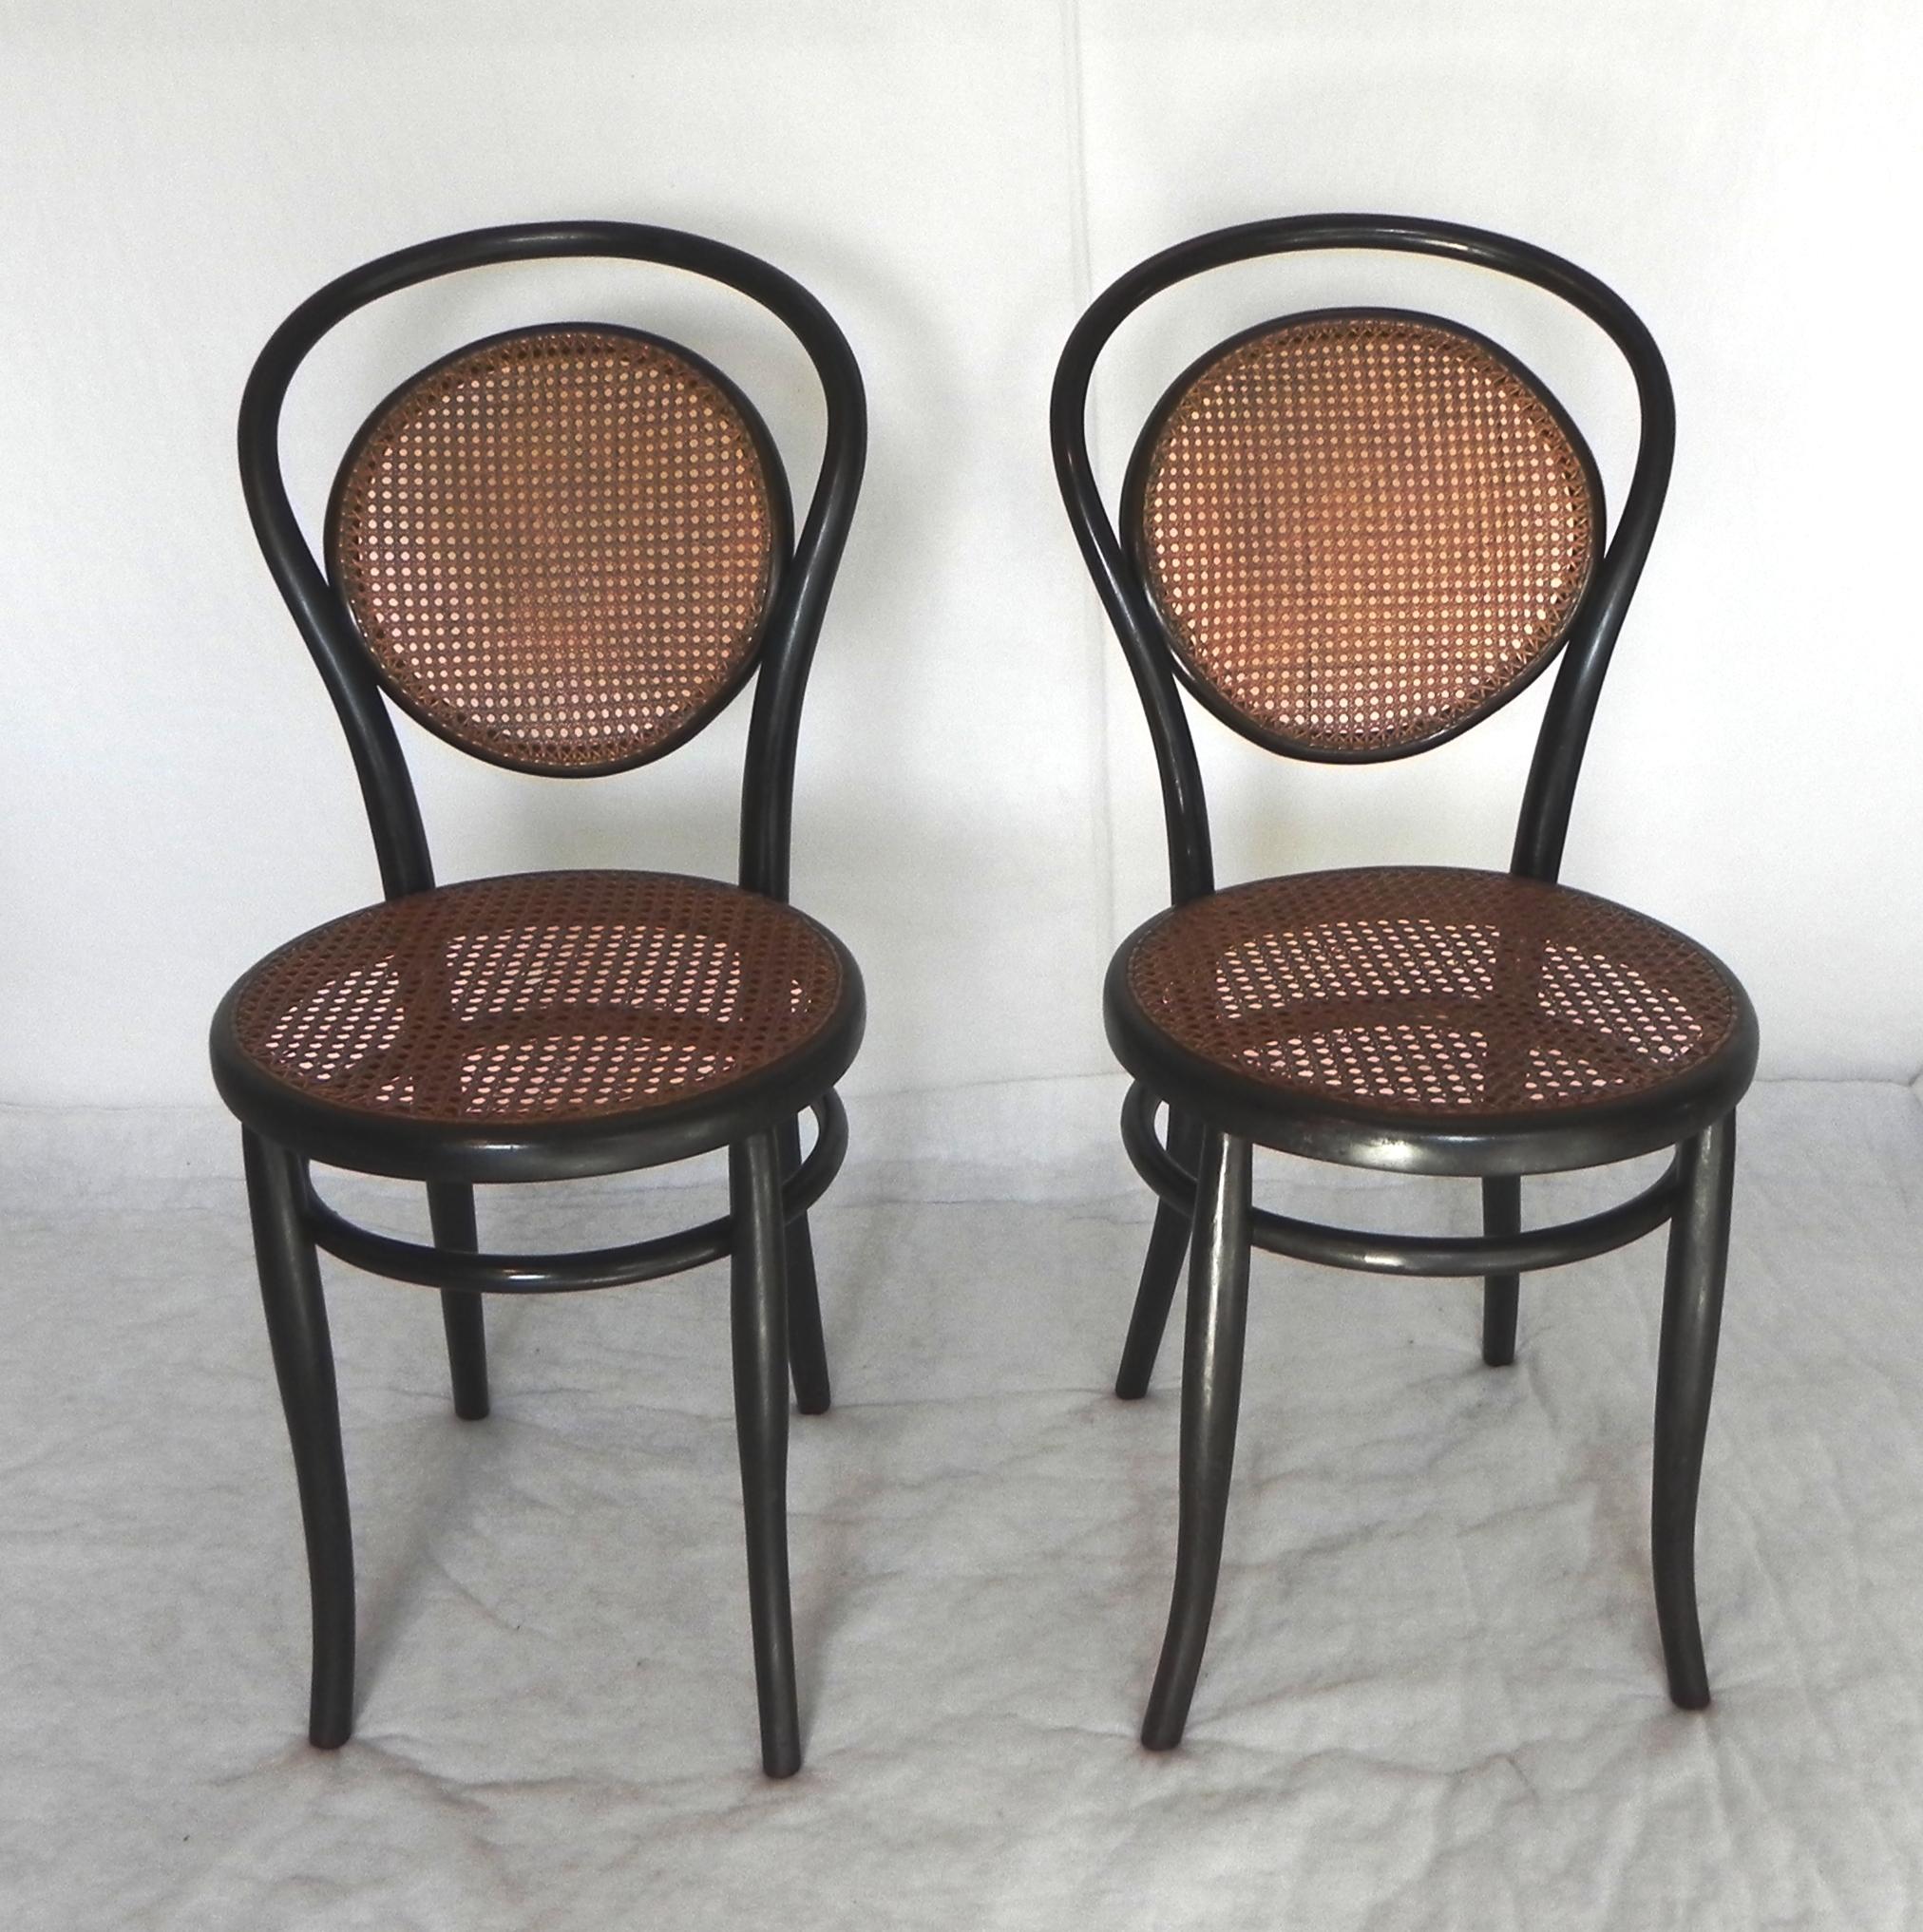 coppia di sedia Khon Wien anni 20. originali in tutte le loro parti. particolare tipo di sedia con schienale in paglia di vienna. impagliata a mano, il logo e' inciso sotto ad una delle sedie. ci sono tracce della etichetta originale, ma